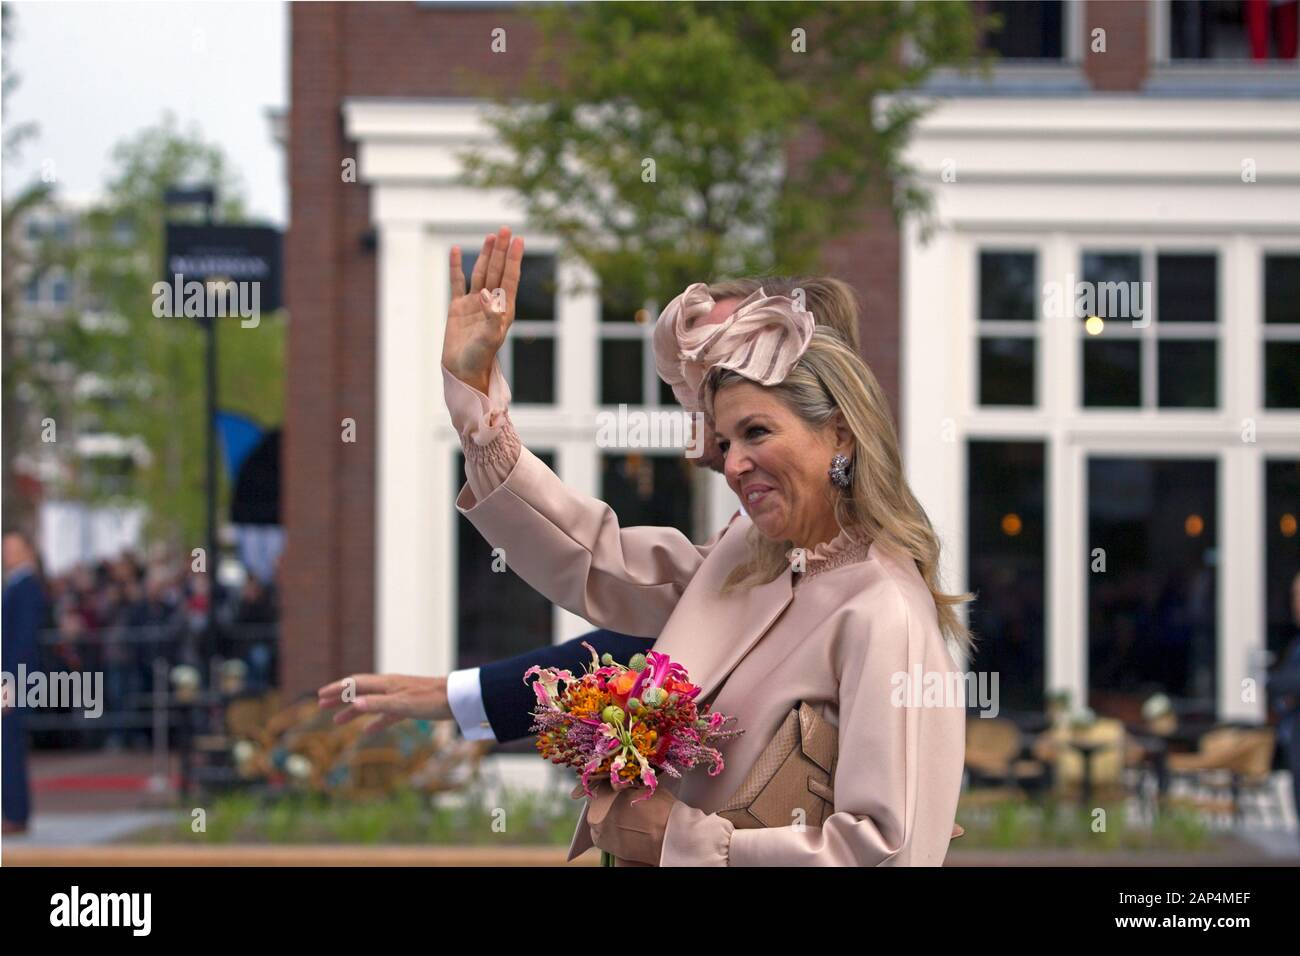 Hoogeveen, the Netherlands - September 18, 2019: Visit of King Willem-Alexander and Queen Maxima to Hoogeveen, the Netherlands Stock Photo